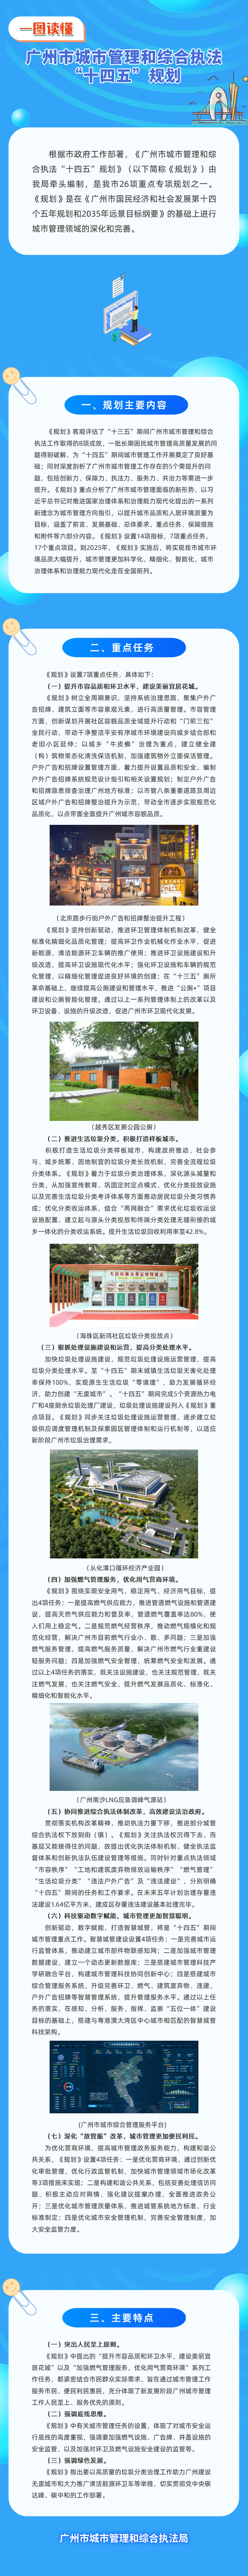 广州城市管理和综合执法“十四五”规划解读.jpg